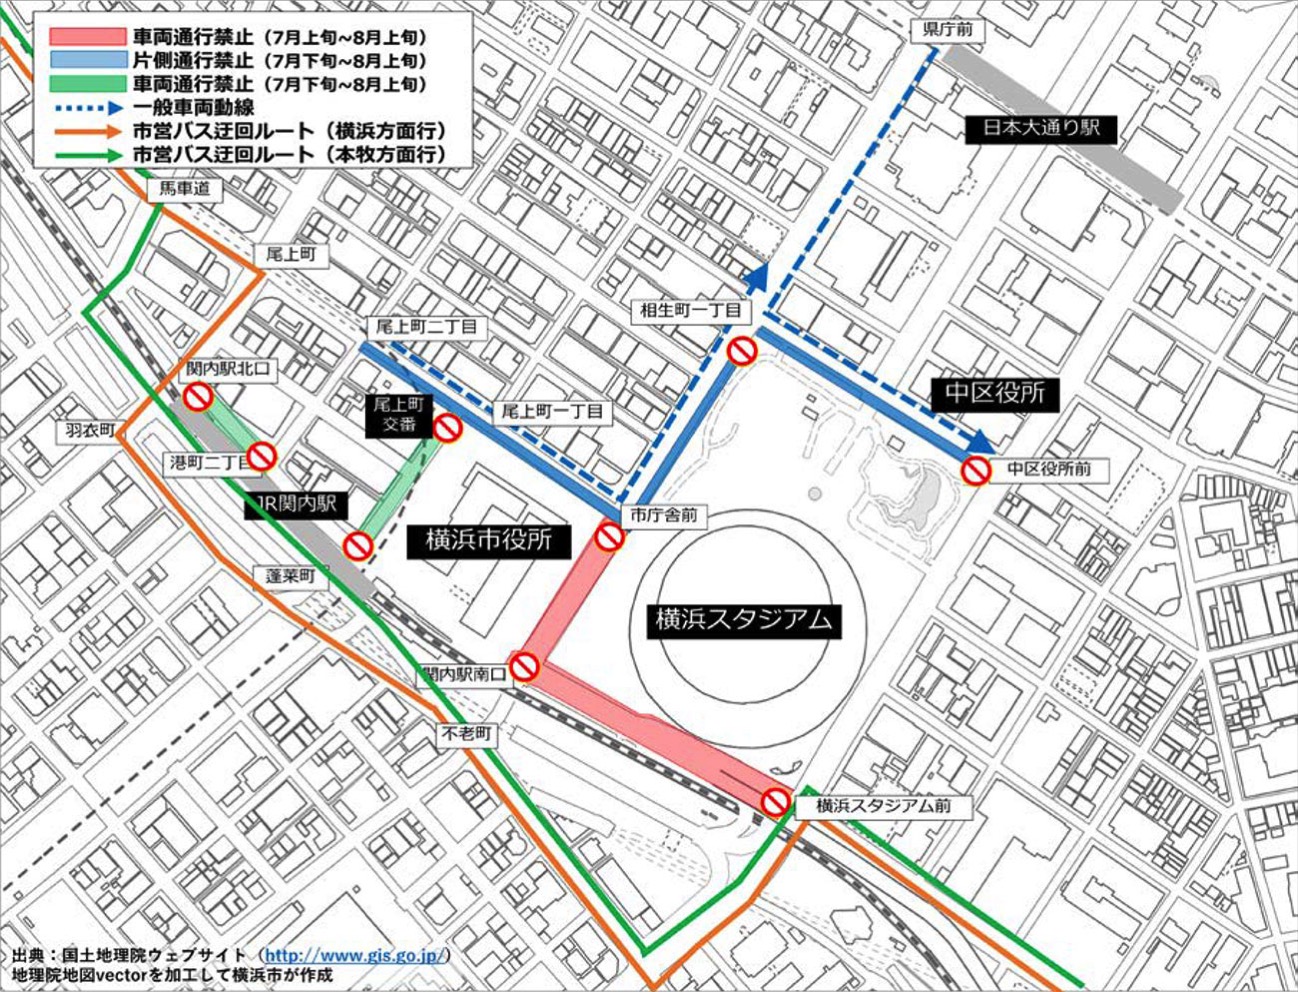 横浜スタジアム周辺の交通規制